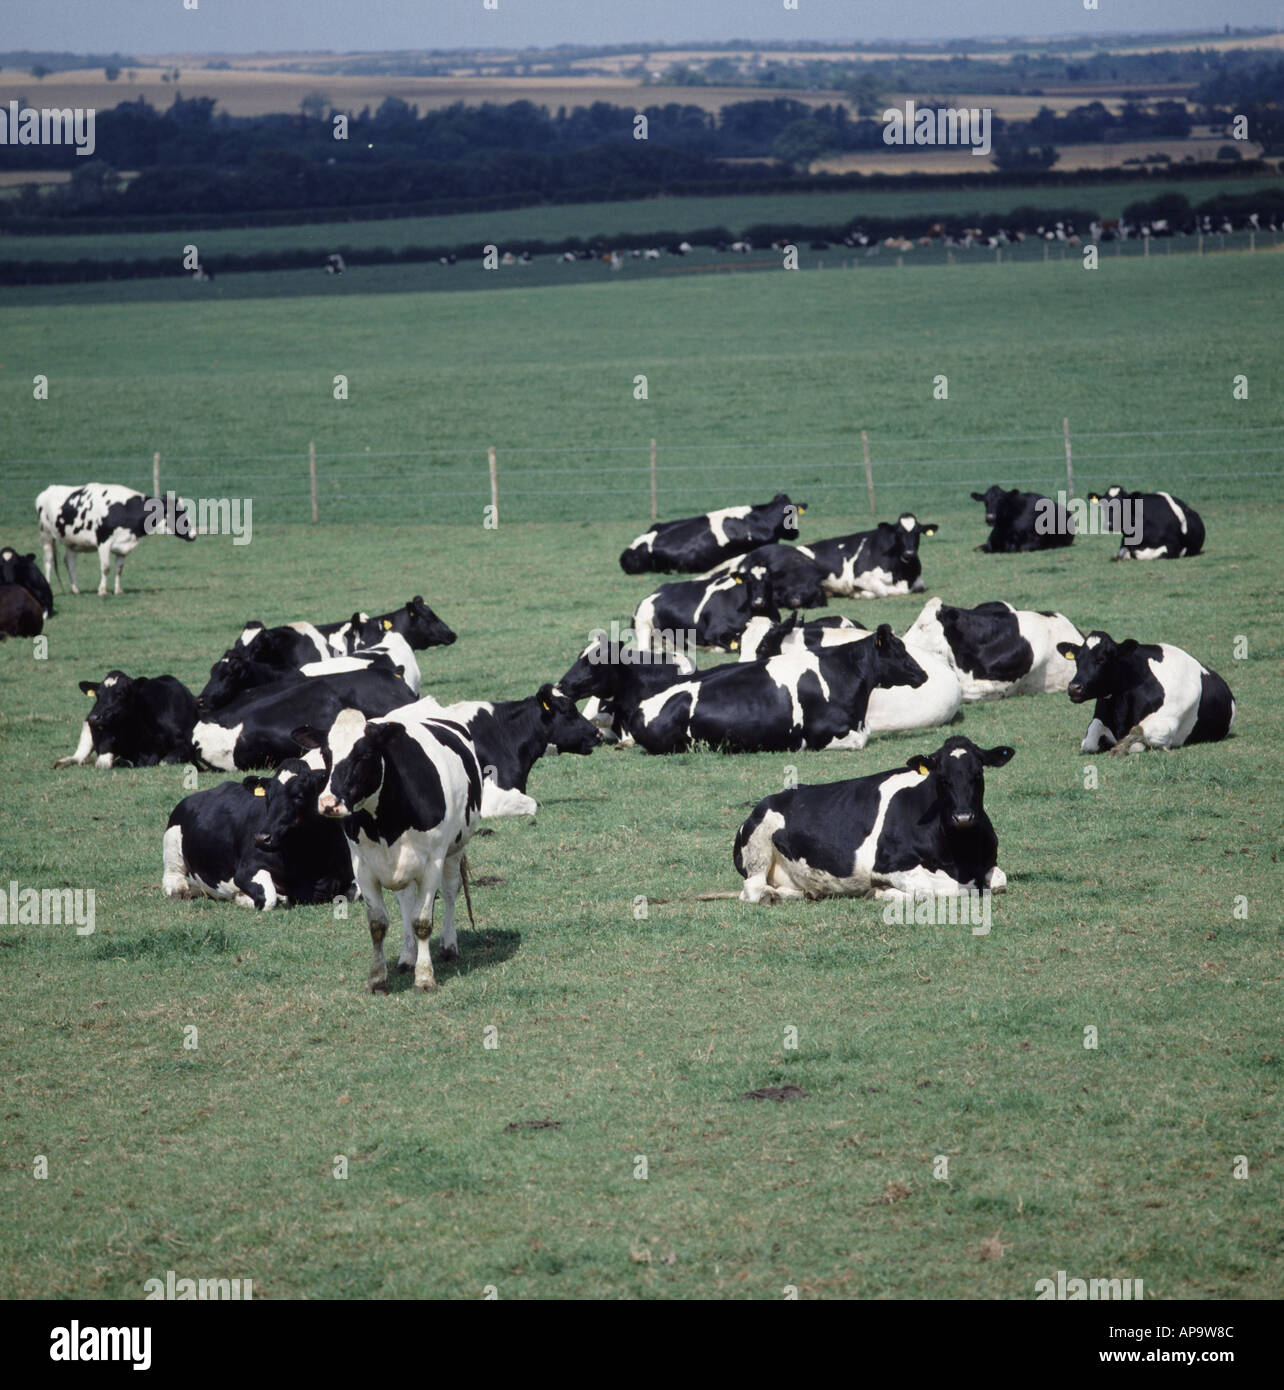 BSE-Überwachung Experiment mit friesischen Kühen sind die Nachkommen von infizierten Tieren Stockfoto